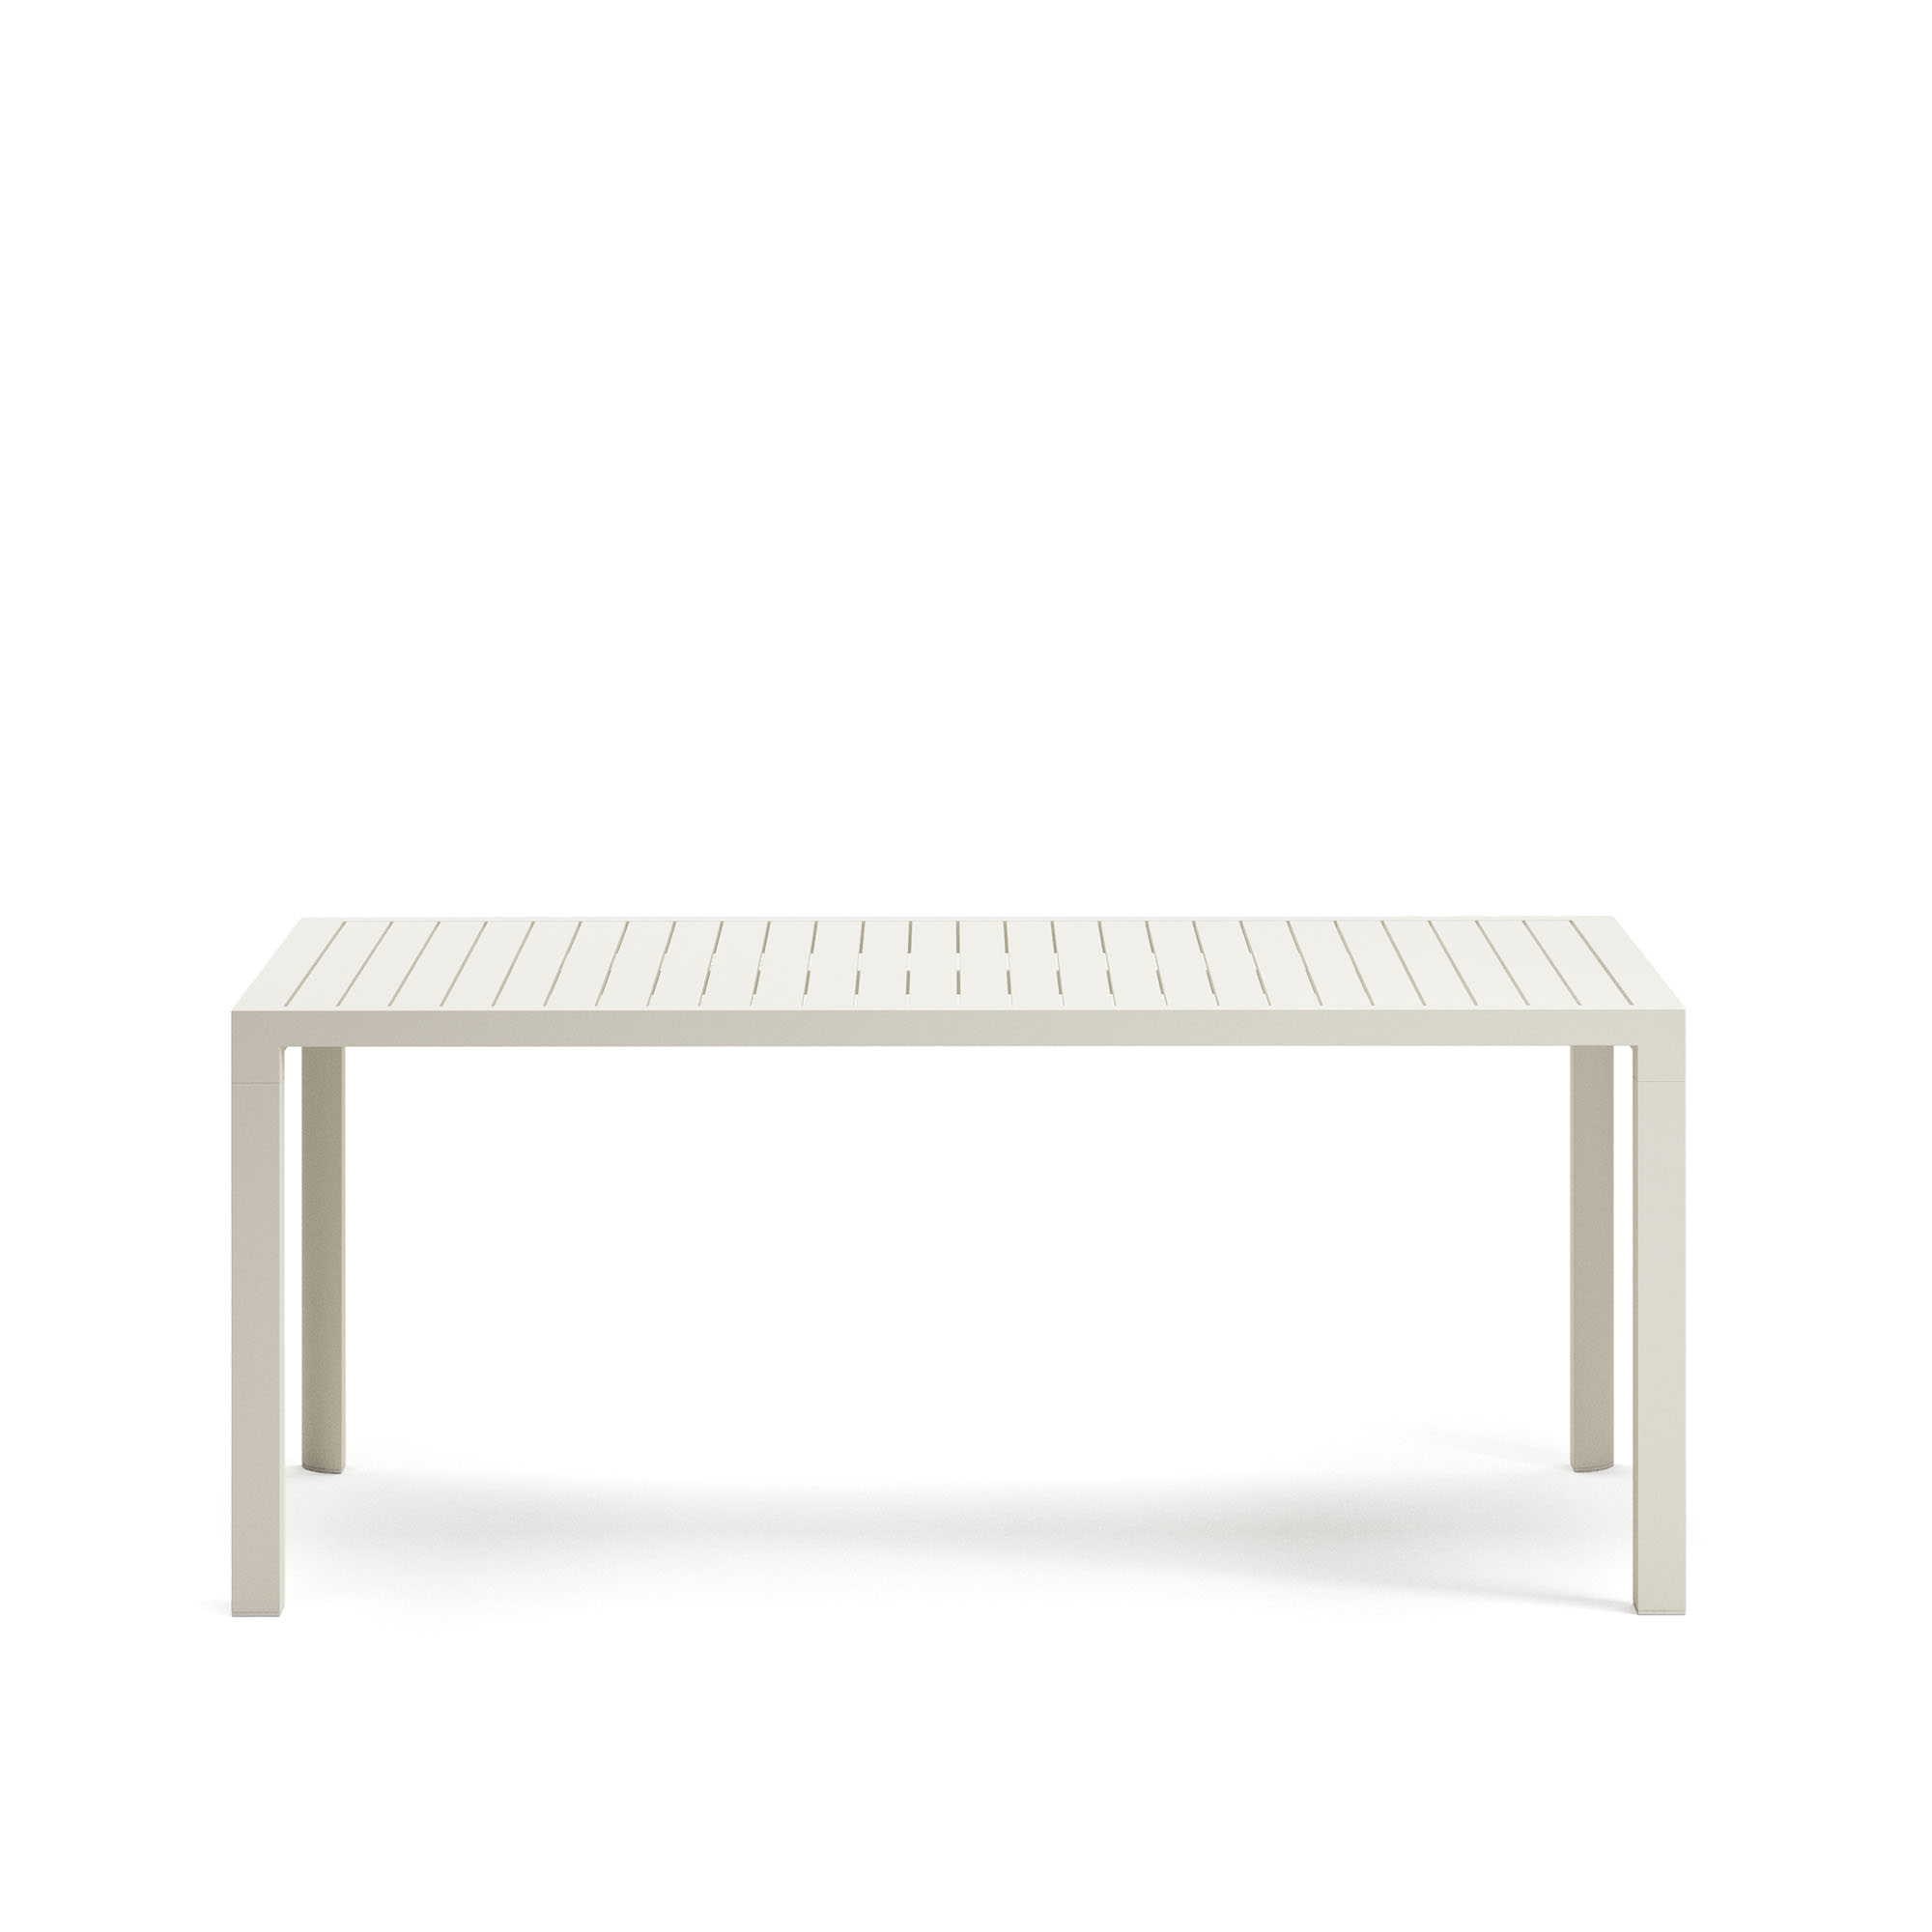 LAFORMA Culip havebord, rektangulær - hvid aluminium (180x90)